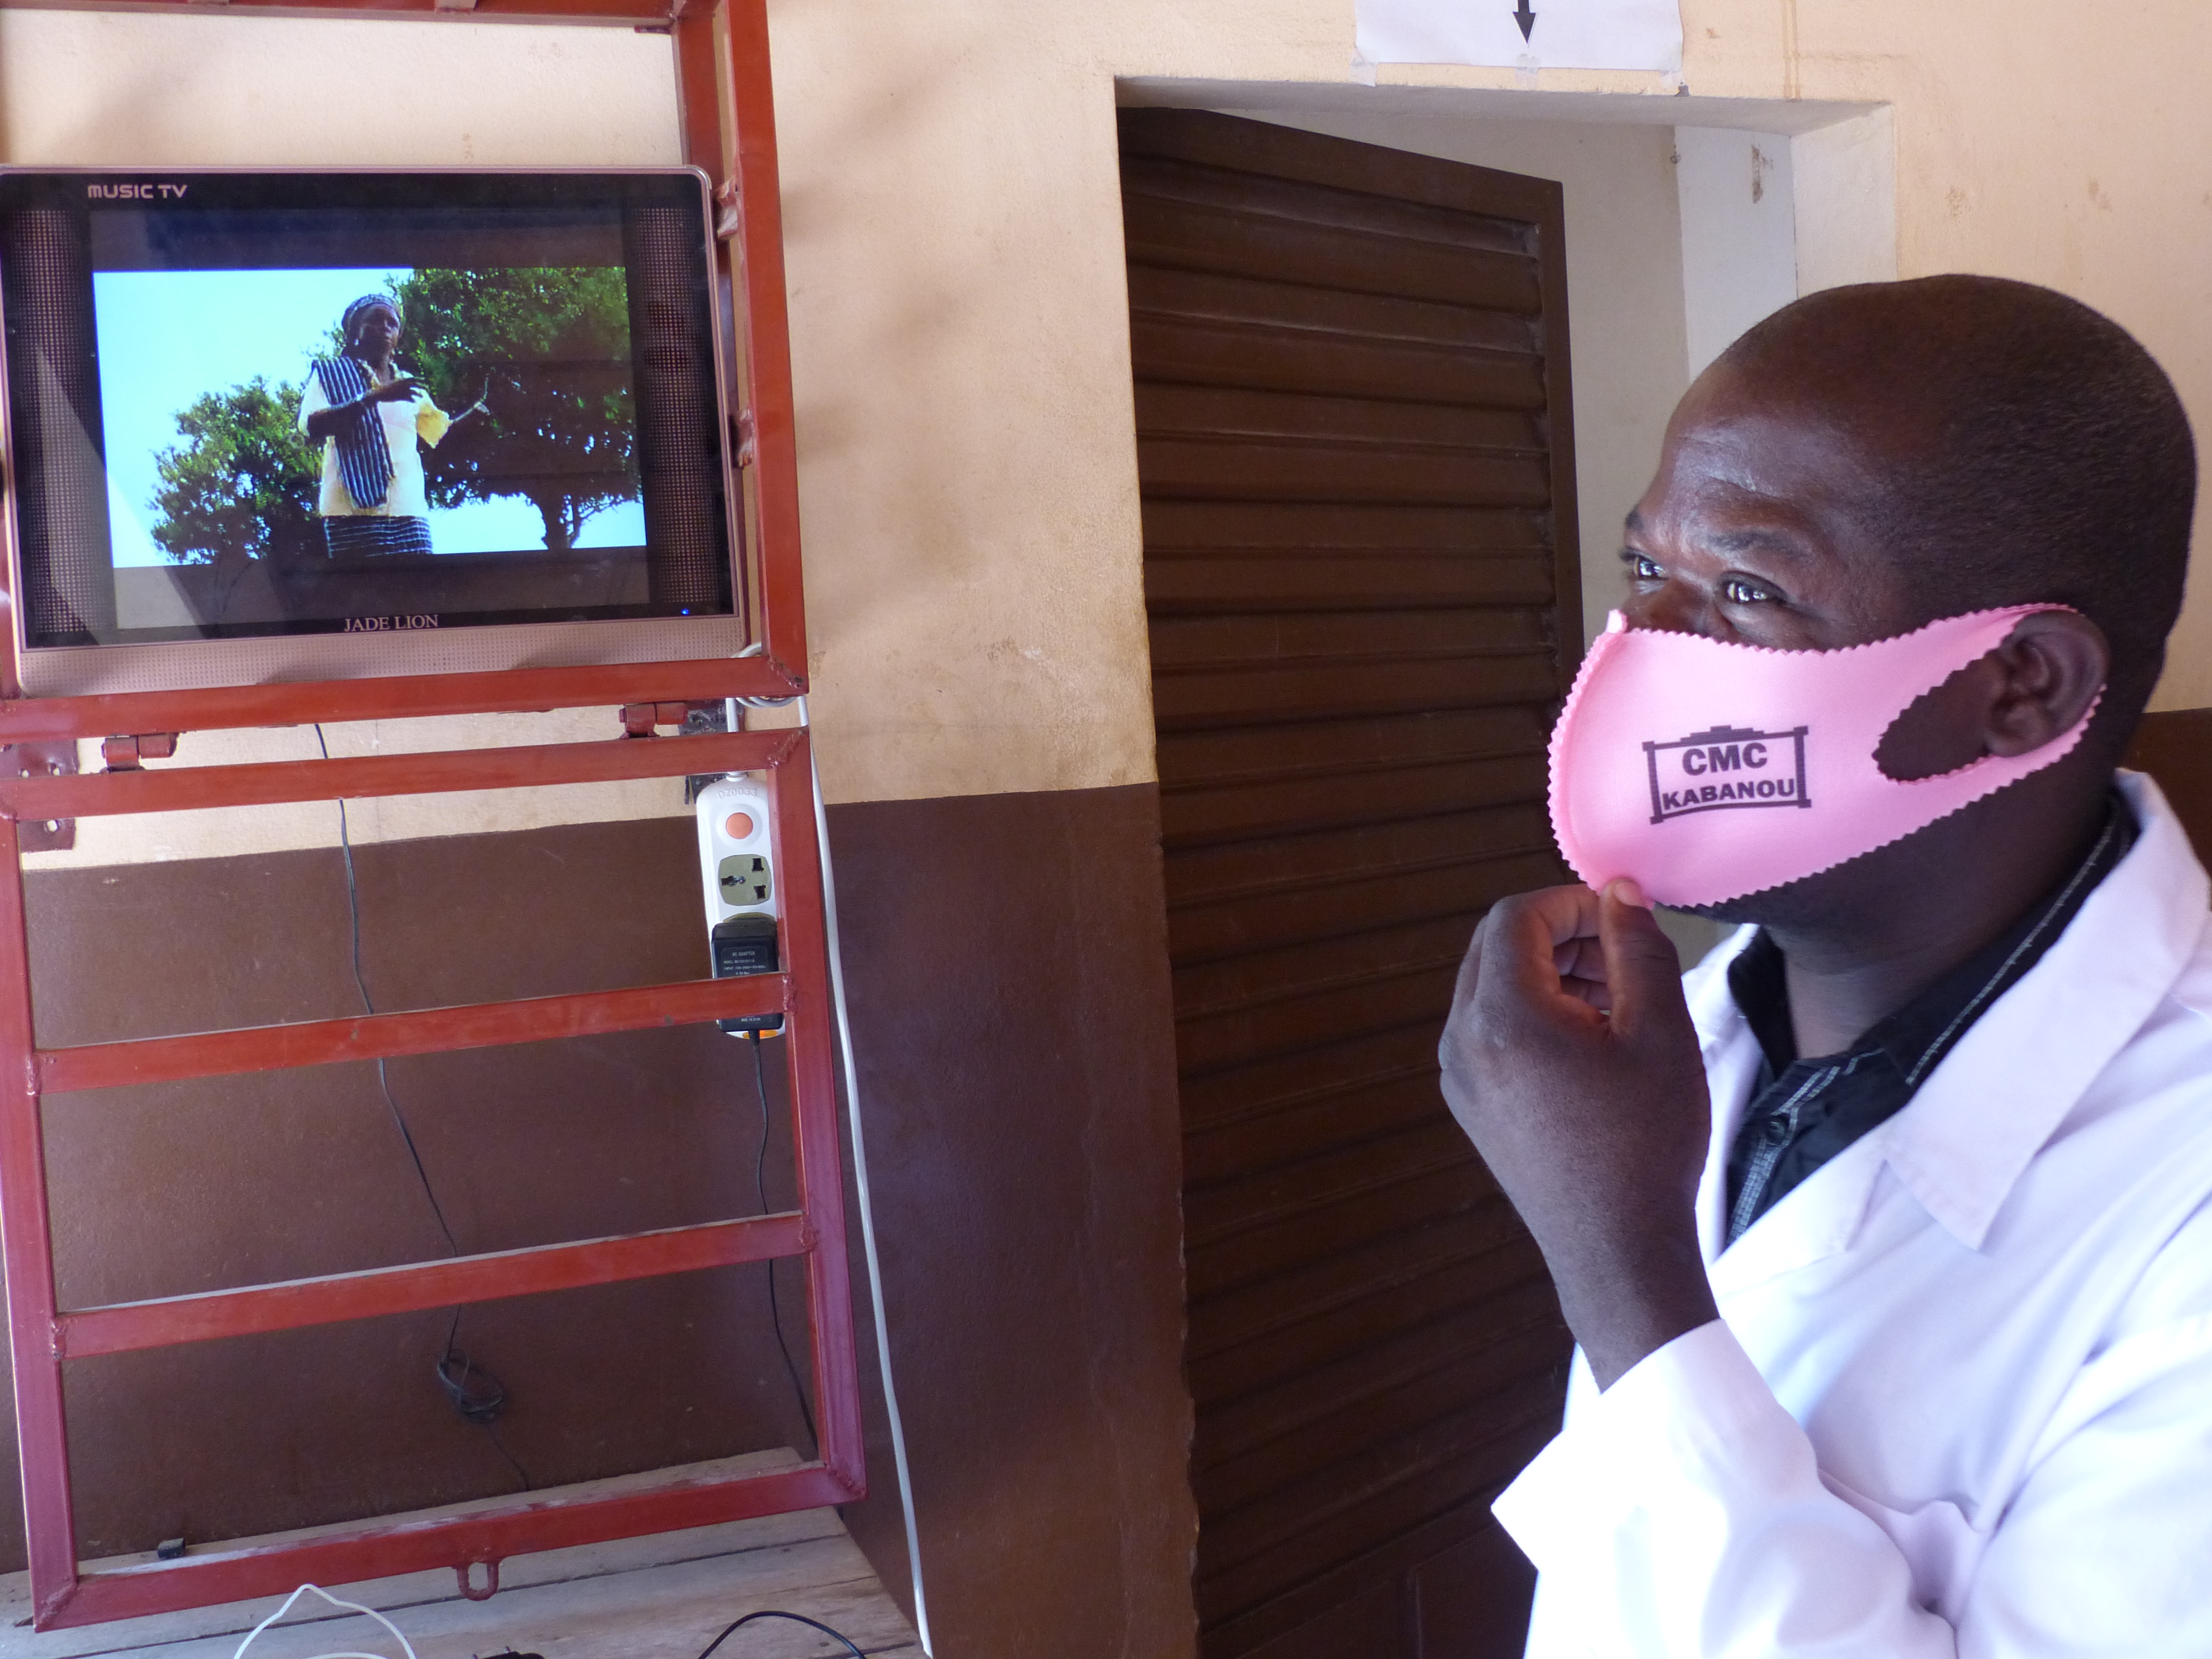 Au CMC (Centre Médical Communautaire) de Kabanou, l'électricité permet de faire fonctionner un écran vidéo dans la salle d’attente et de diffuser des messages de sensibilisation aux patient·es.